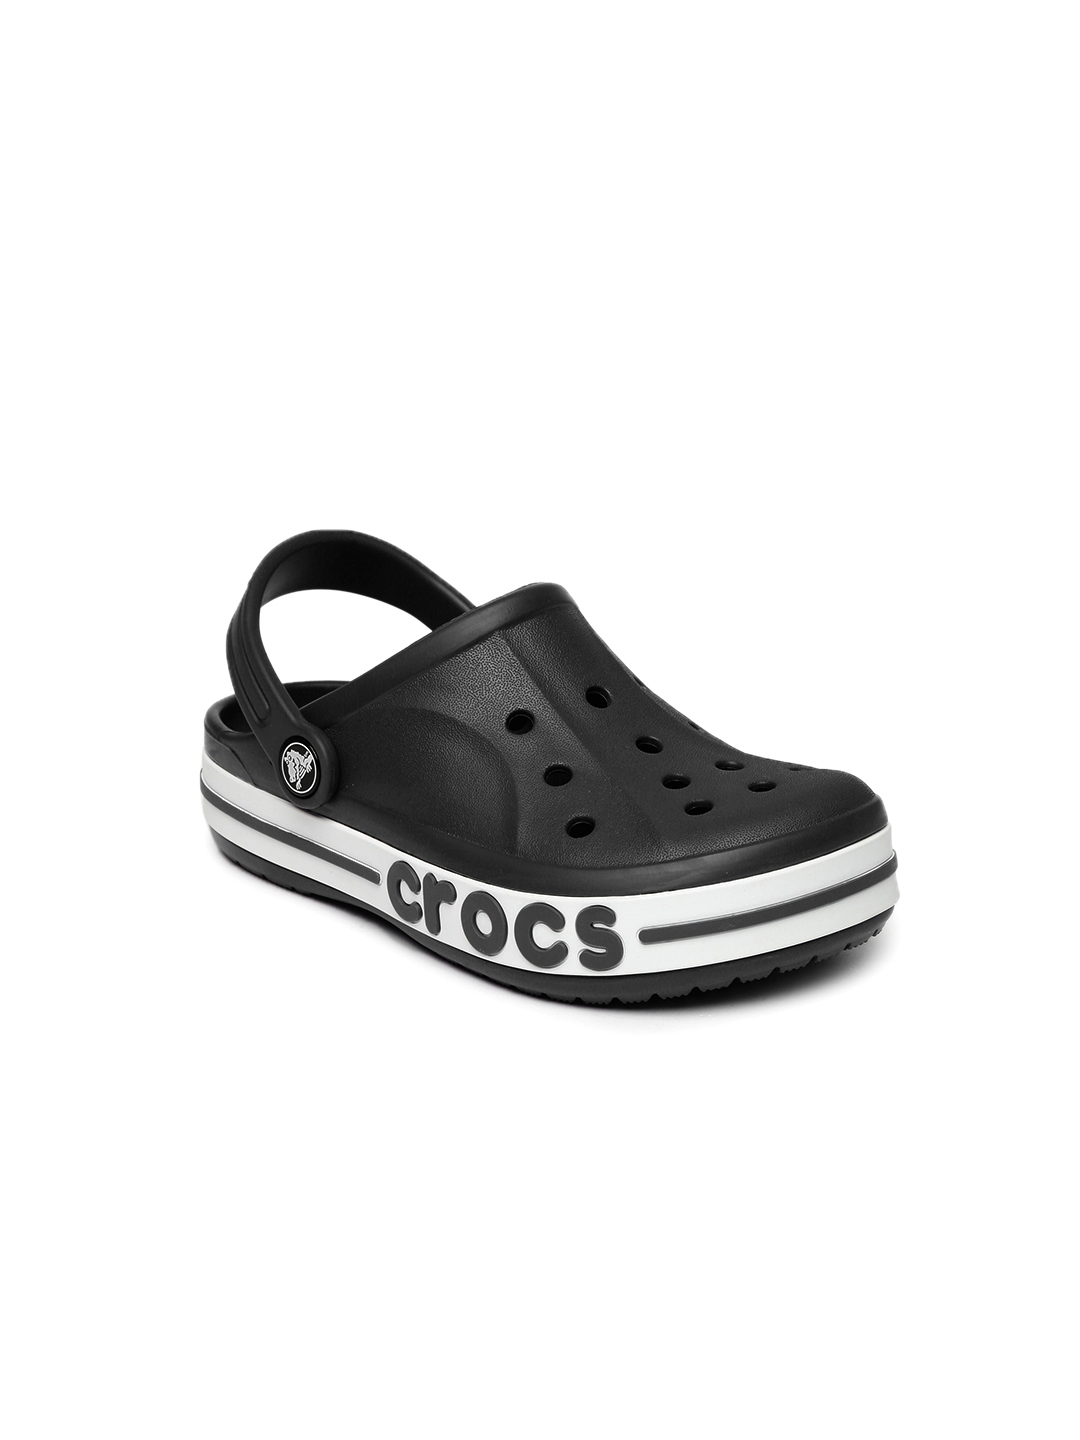 crocs black solid clogs